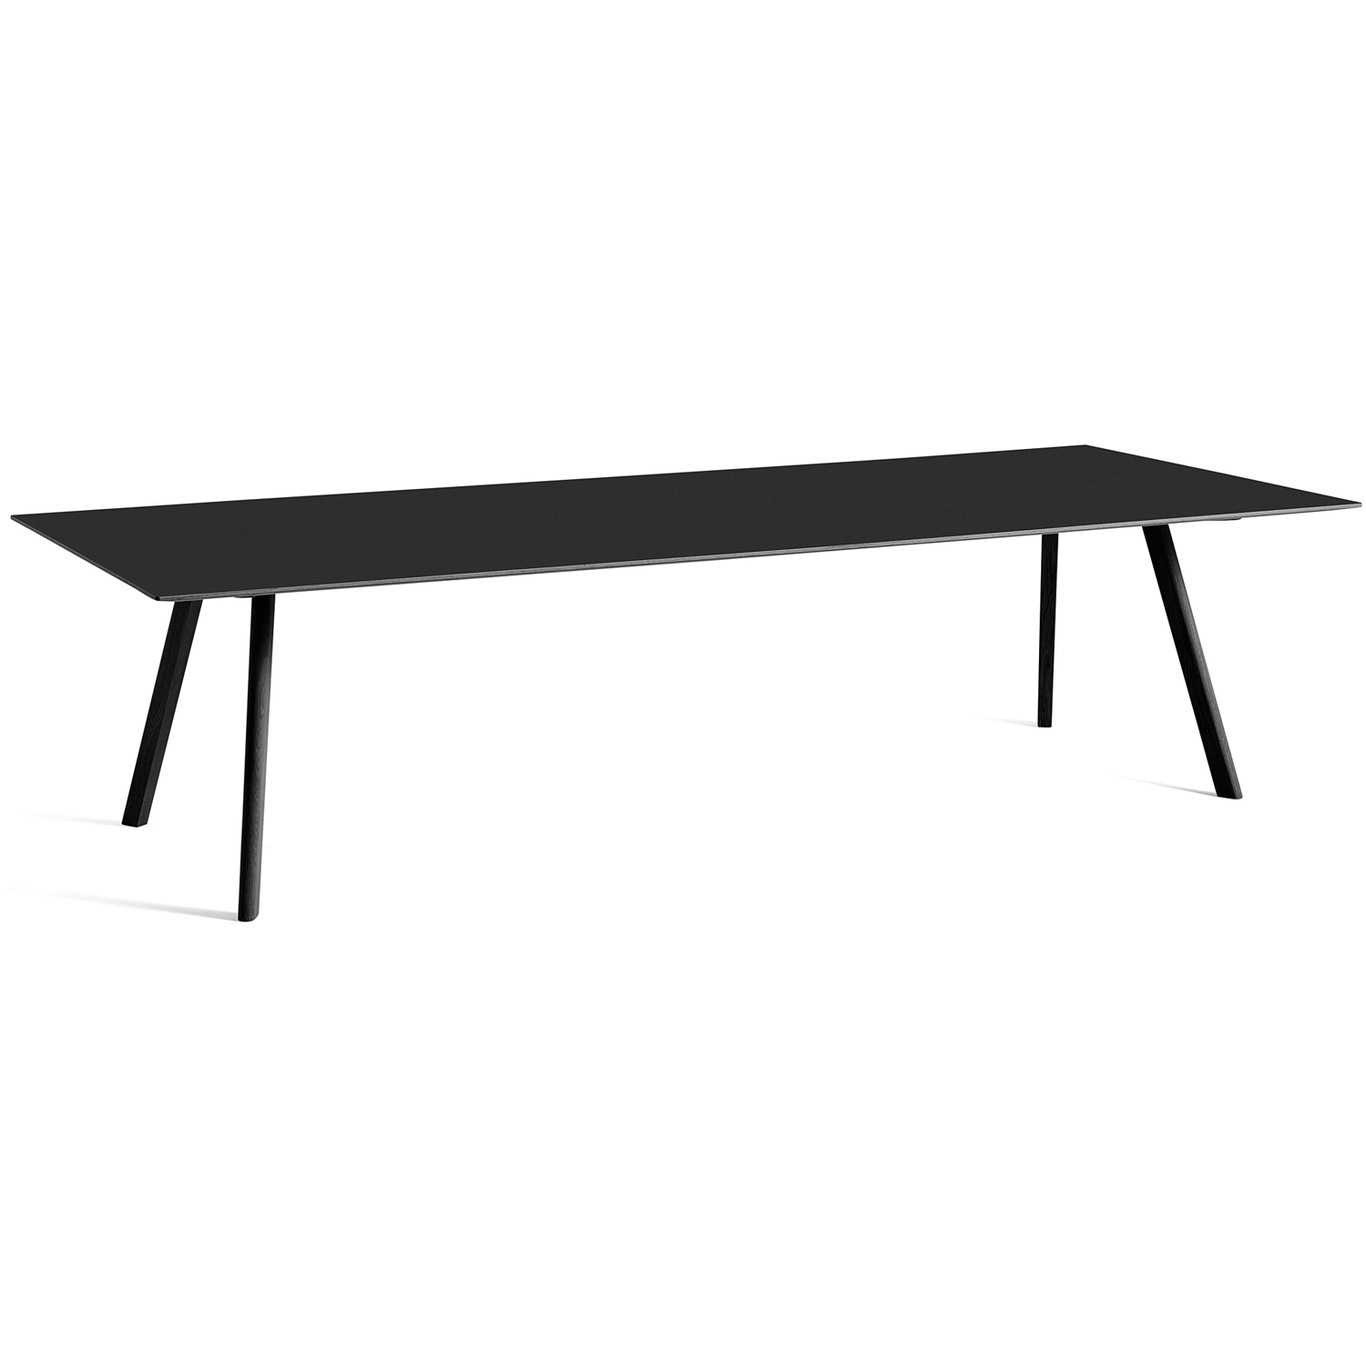 CPH 30 Tisch 300x120 cm, Schwarz Mit Wasserlack Behandelte Eiche / Schwarz Linoleum